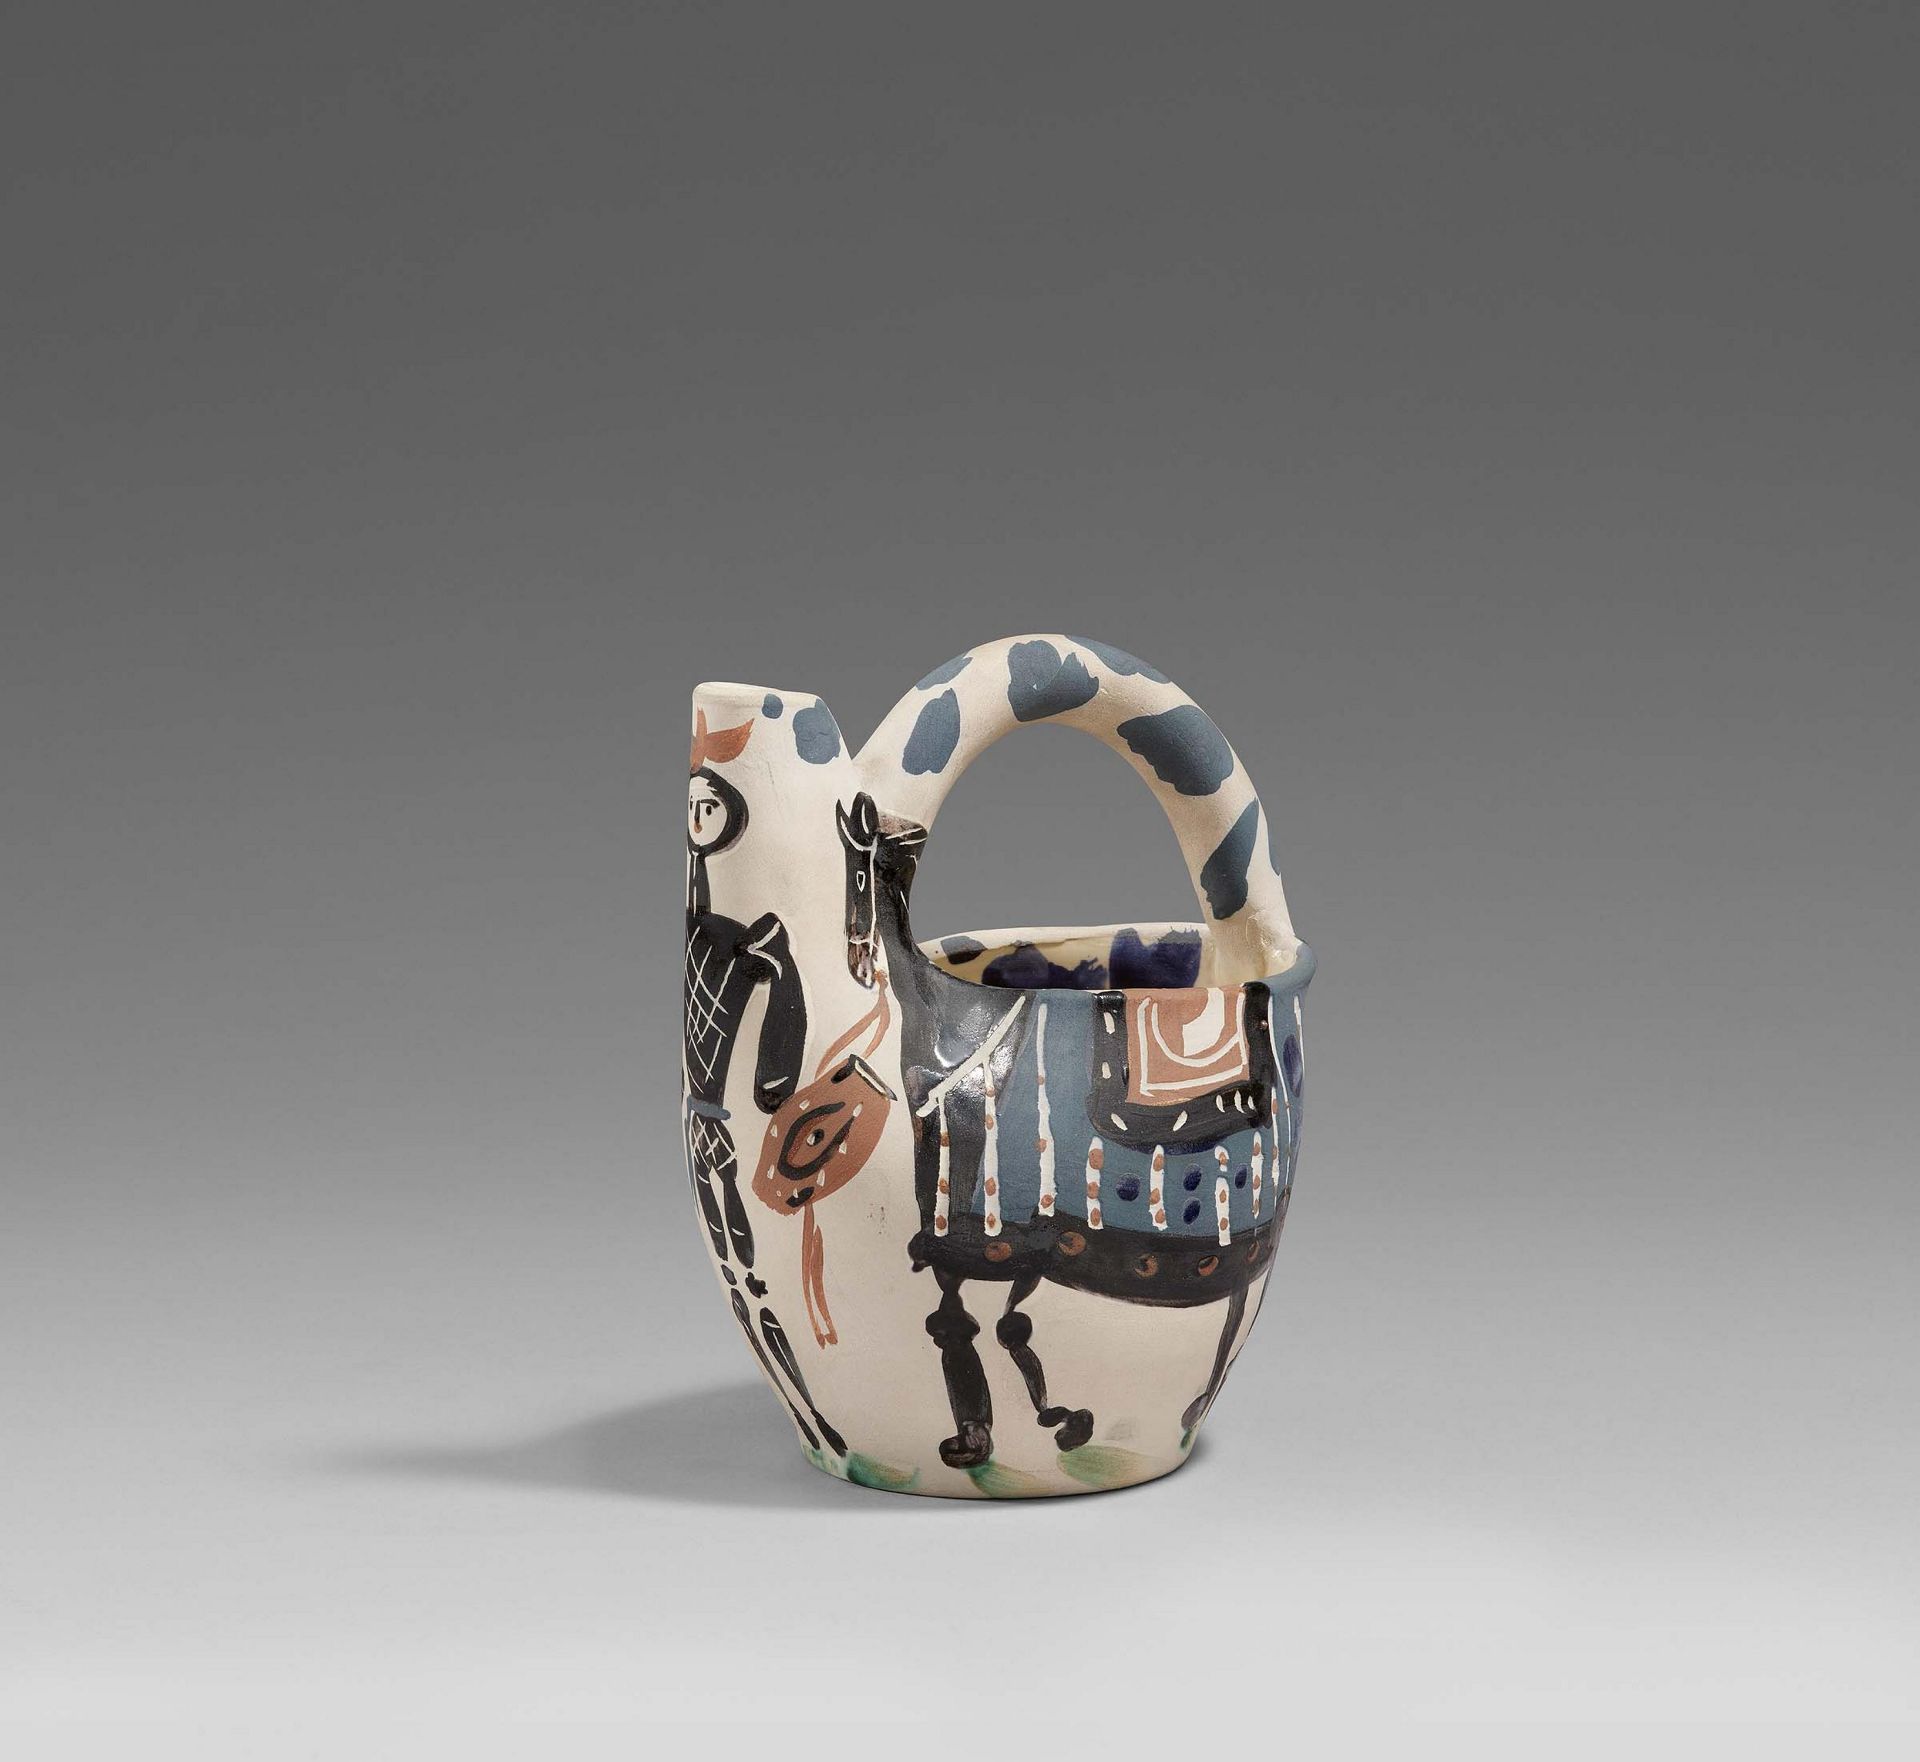 Pablo Picasso Ceramics: Cavalier and Horse